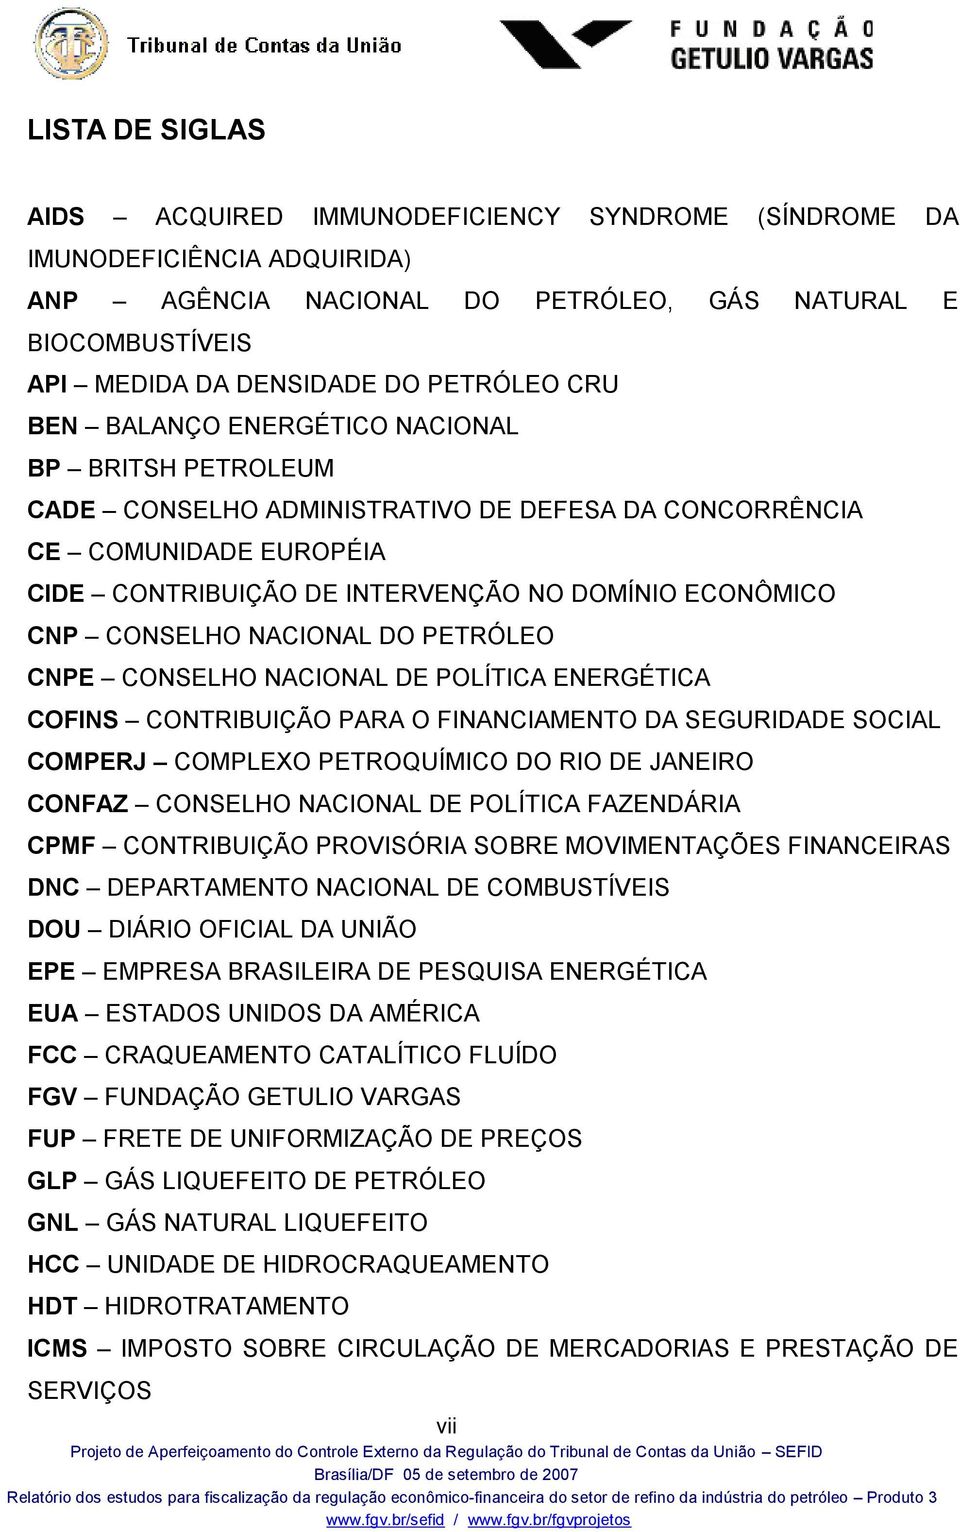 CONSELHO NACIONAL DO PETRÓLEO CNPE CONSELHO NACIONAL DE POLÍTICA ENERGÉTICA COFINS CONTRIBUIÇÃO PARA O FINANCIAMENTO DA SEGURIDADE SOCIAL COMPERJ COMPLEXO PETROQUÍMICO DO RIO DE JANEIRO CONFAZ